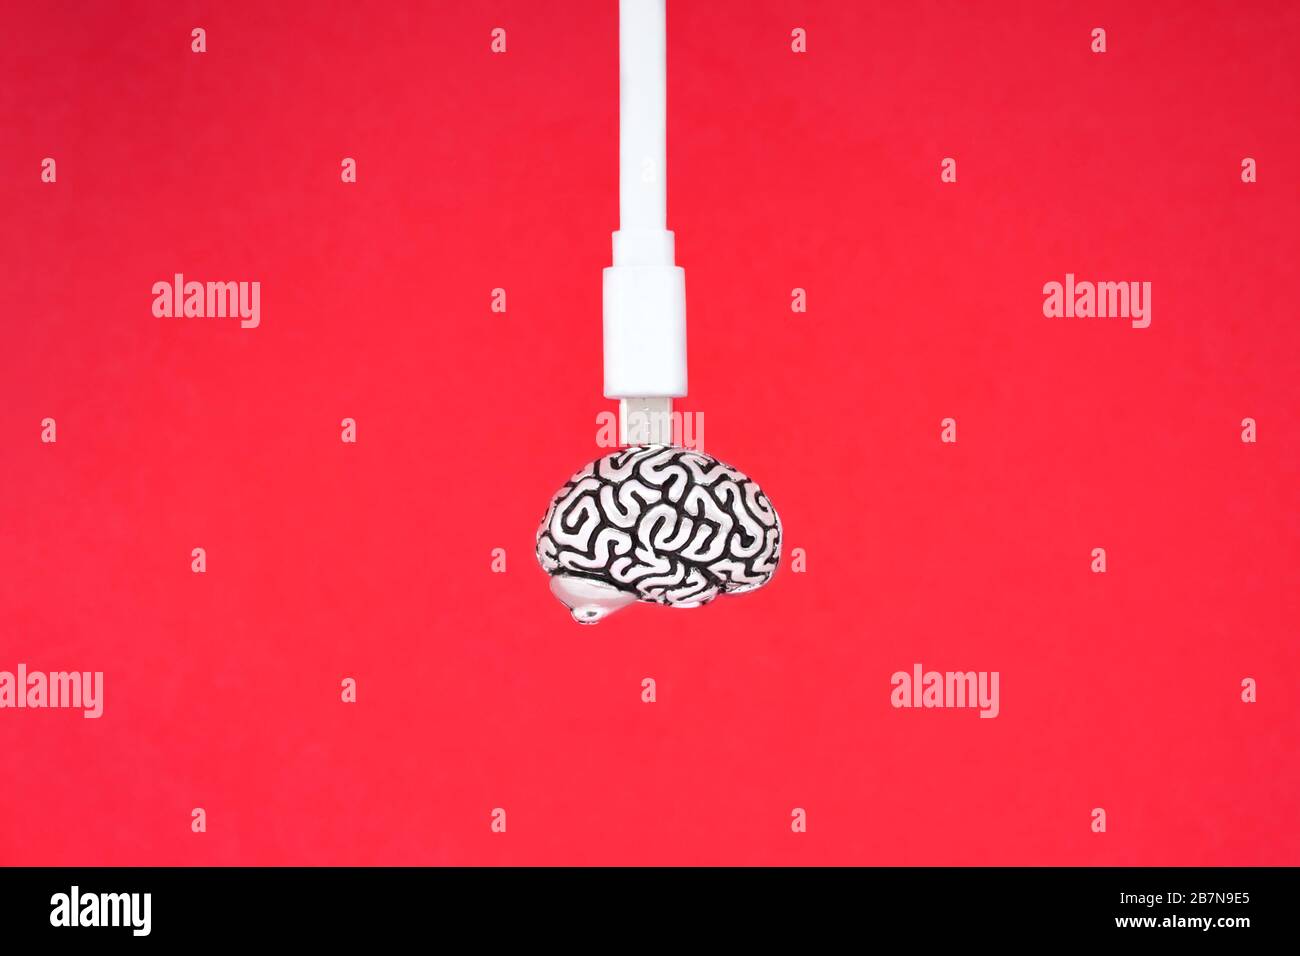 Un câble micro usb blanc connecté à un petit modèle métallique d'un cerveau humain isolé sur un fond rouge. Prise de vue de profil. Banque D'Images